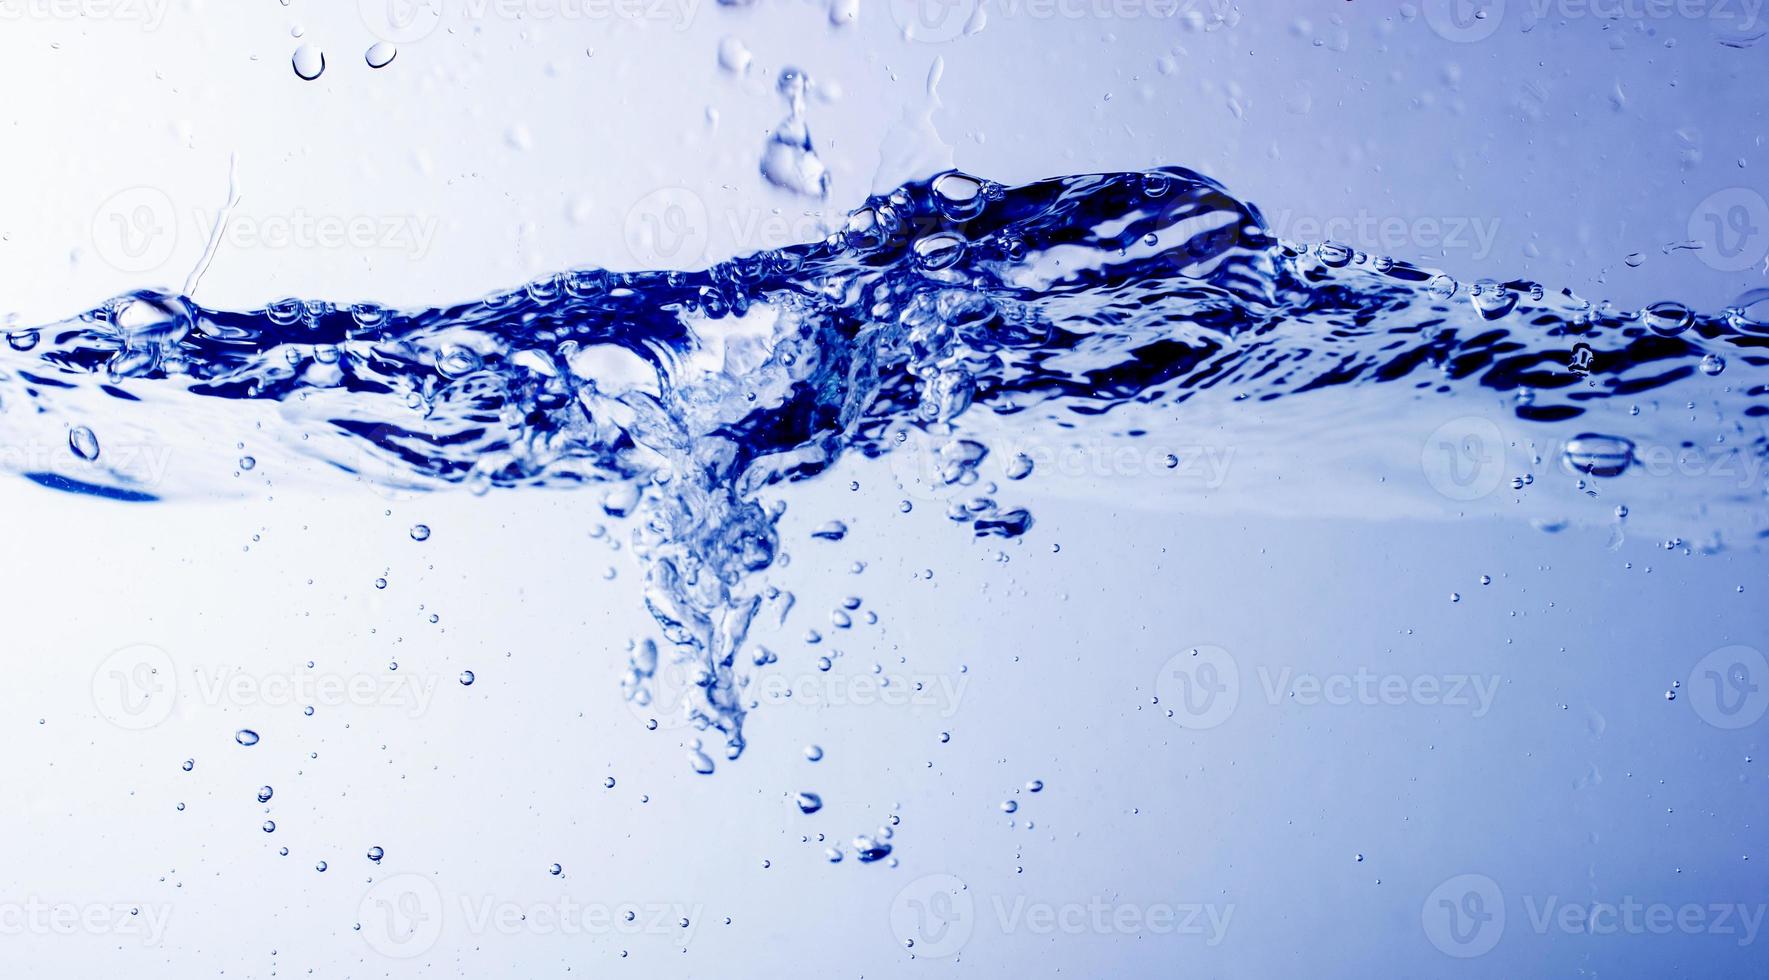 Wasser und Blasen auf blauem Hintergrund foto